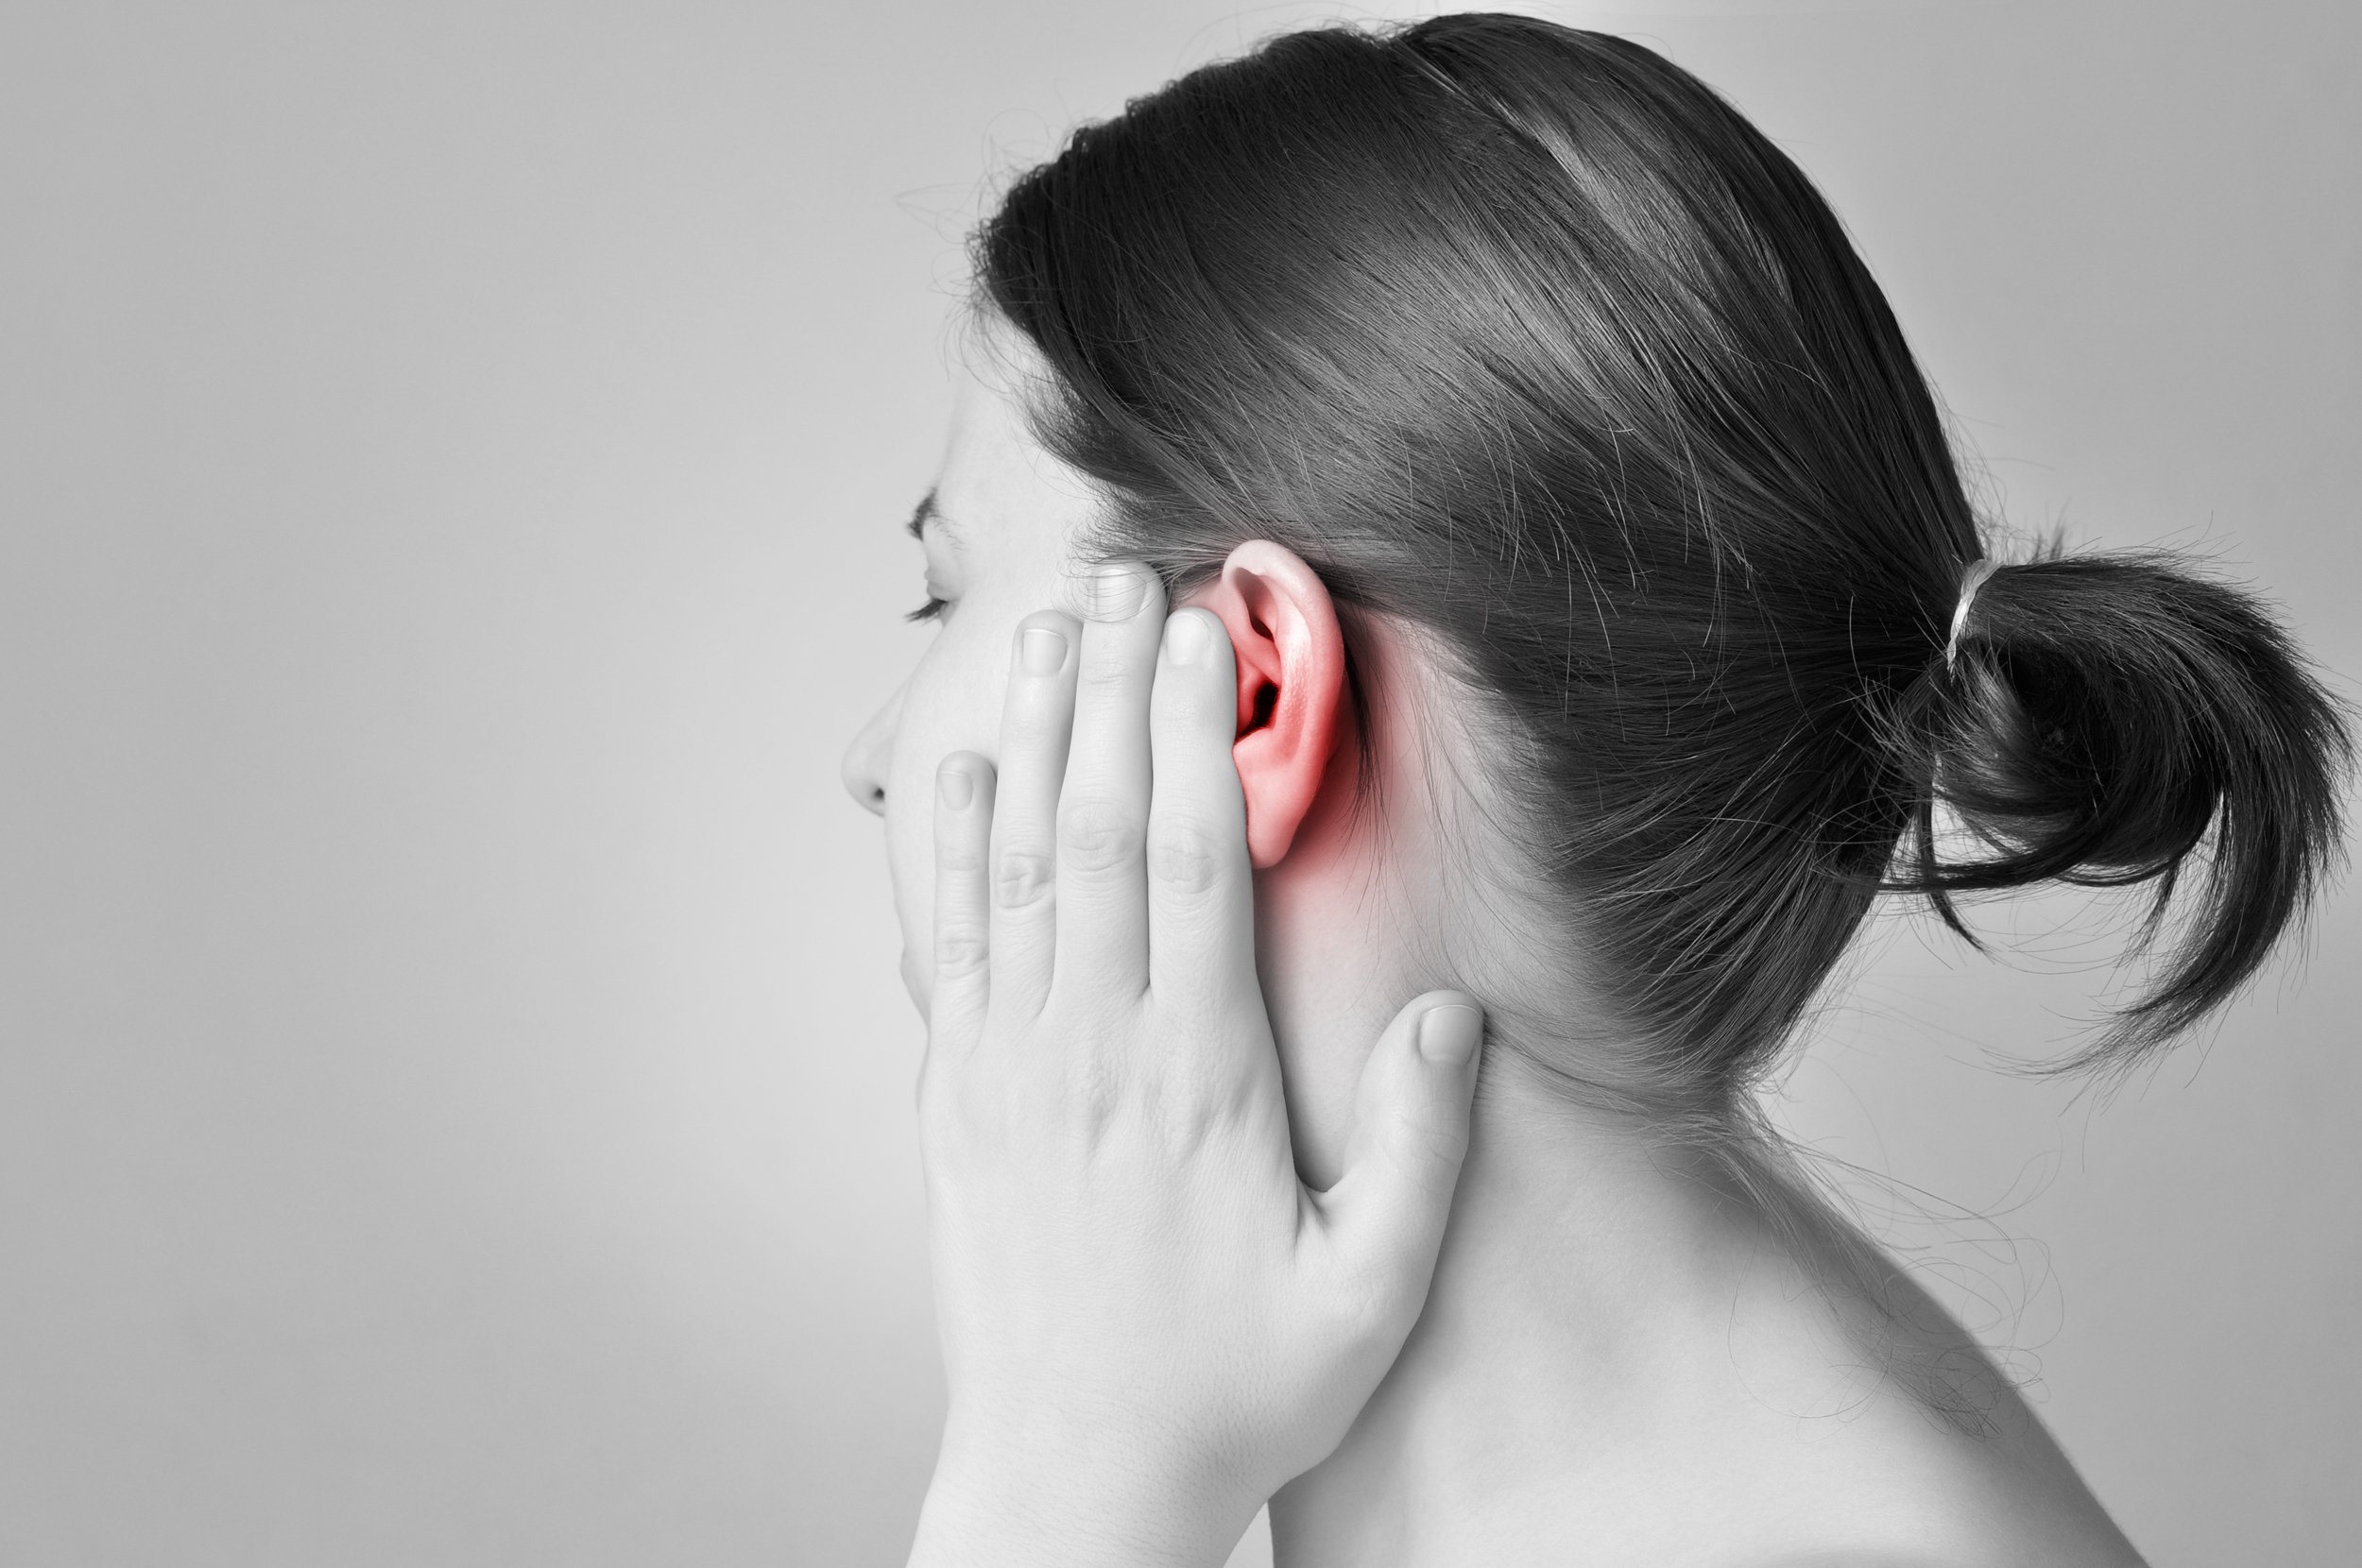  Mujer con dolor de oído. Fuente: Shutterstock